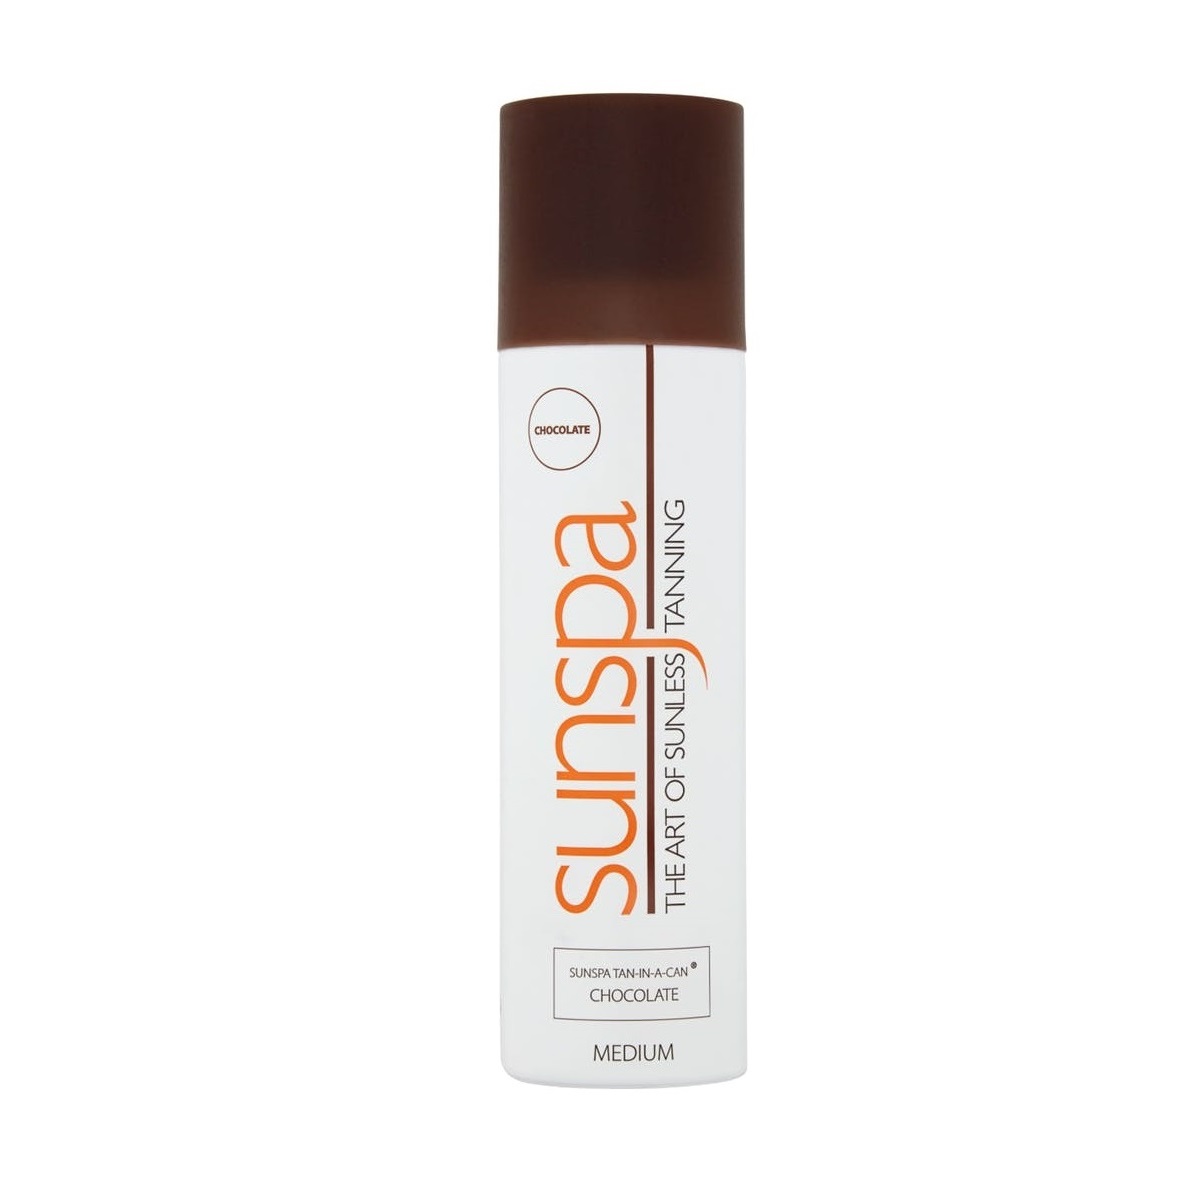 Sunspa Tan-in-a-can Selvbruner, Chocolate/Medium